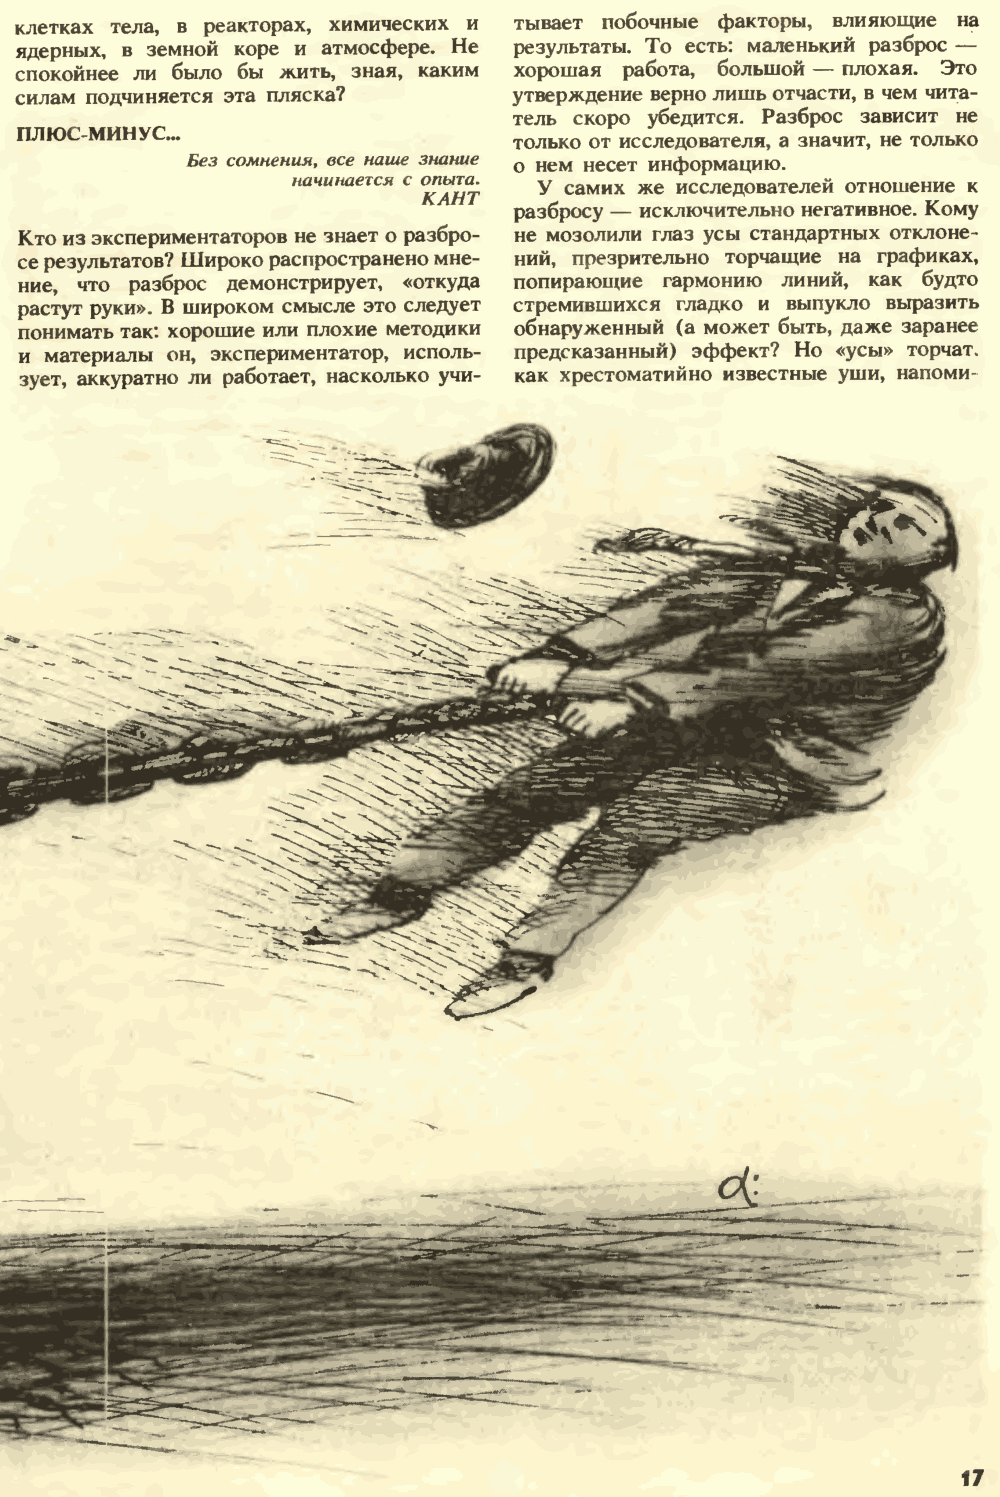 Внешняя сила. С.Н. Катасонов. Химия и жизнь, 1990, №7, с.16-22. Фотокопия №2